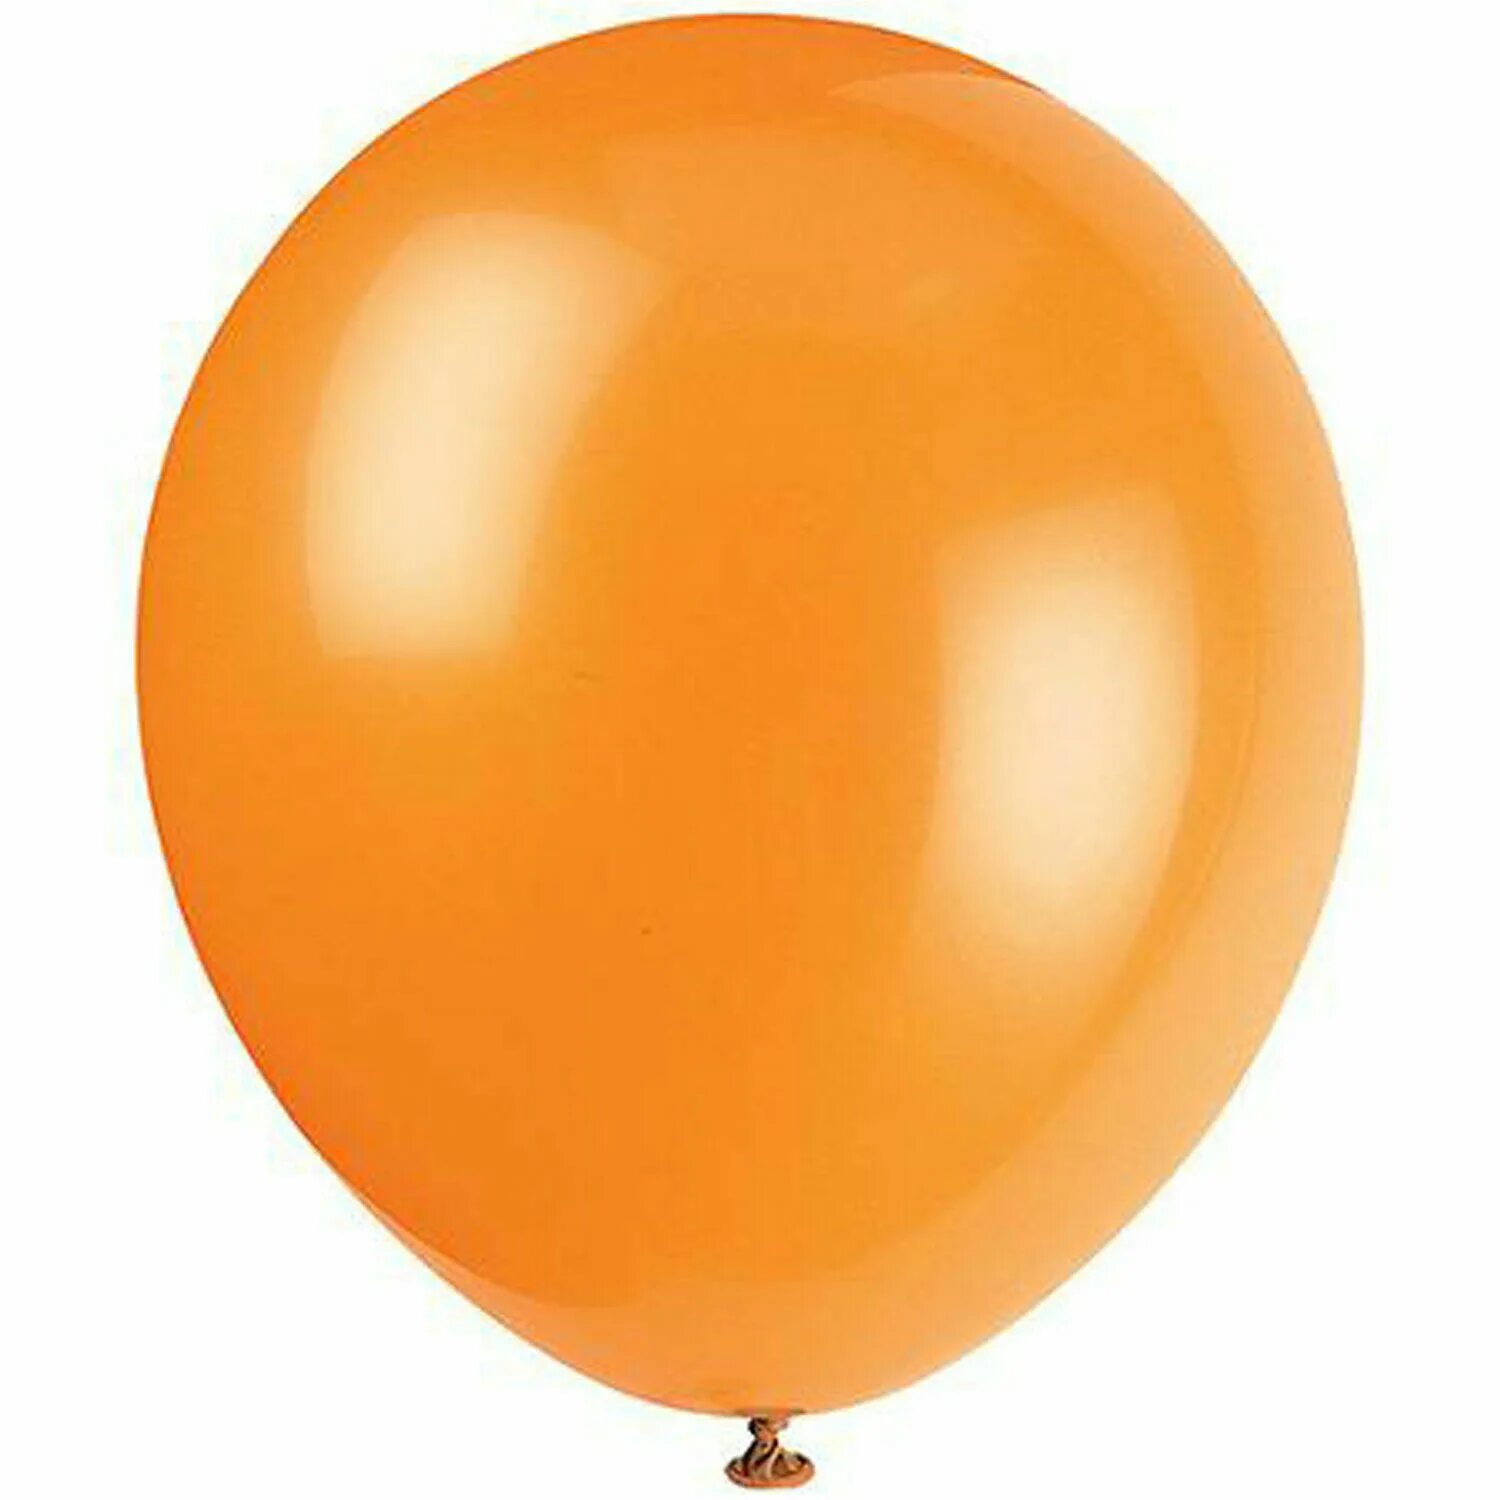 На оранжевом шаре. Шар оранжевый пастель. Шары латекс парти Баллонс. Оранжевый воздушный шарик. Круглый воздушный шар.